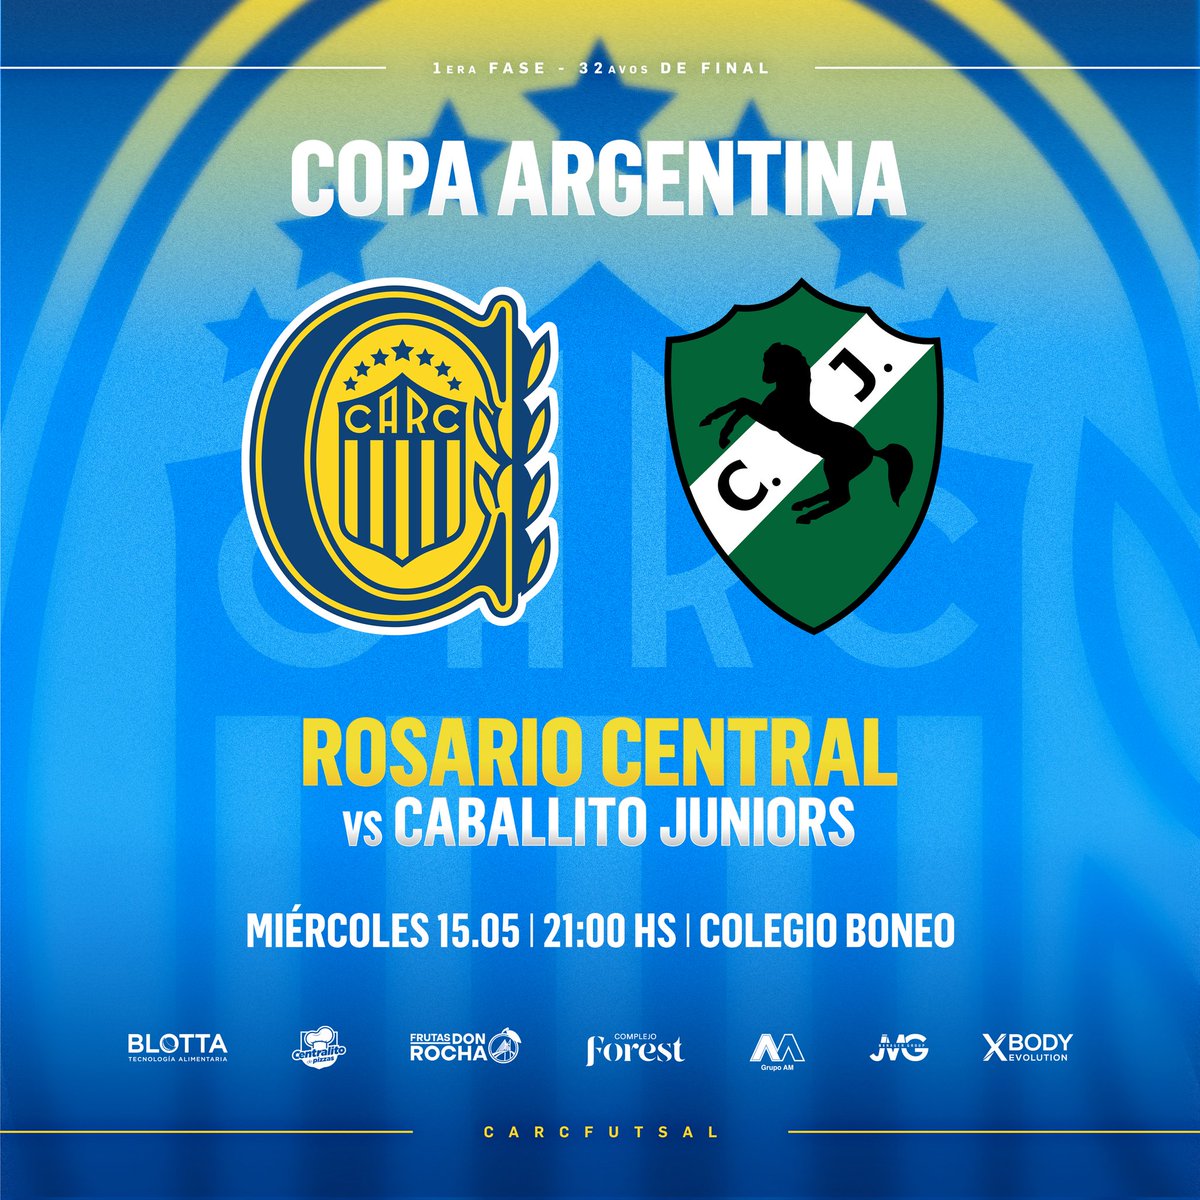 ¡Mañana arrancamos a competir en #CopaArgentina! 🏆#CA | Primera Fase 🆚️ @CaballitoJrsOK ⏰ 21.00 hs 📍 Colegio Boneo ¡Vamos con todo! 💪 #VamosCanalla🇺🇦